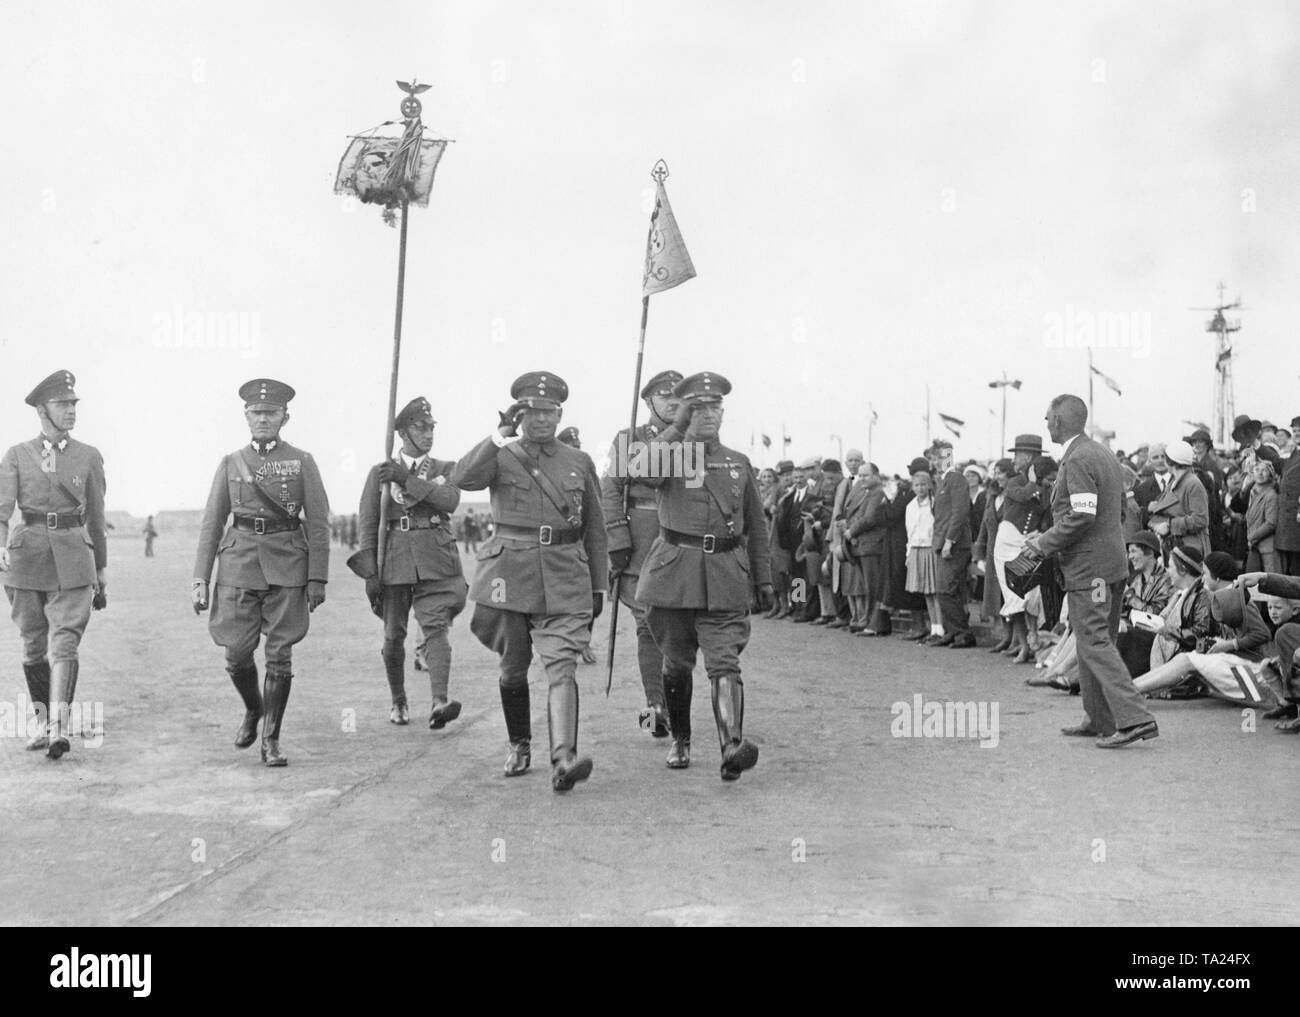 Die Führer der Stahlhelm, Franz Seldte (Salutierte auf der linken Seite) und Theodor Duesterberg (auf der rechten Seite) vorbei an die versammelten Mitglieder auf dem Tempelhofer Feld in Berlin. Stockfoto